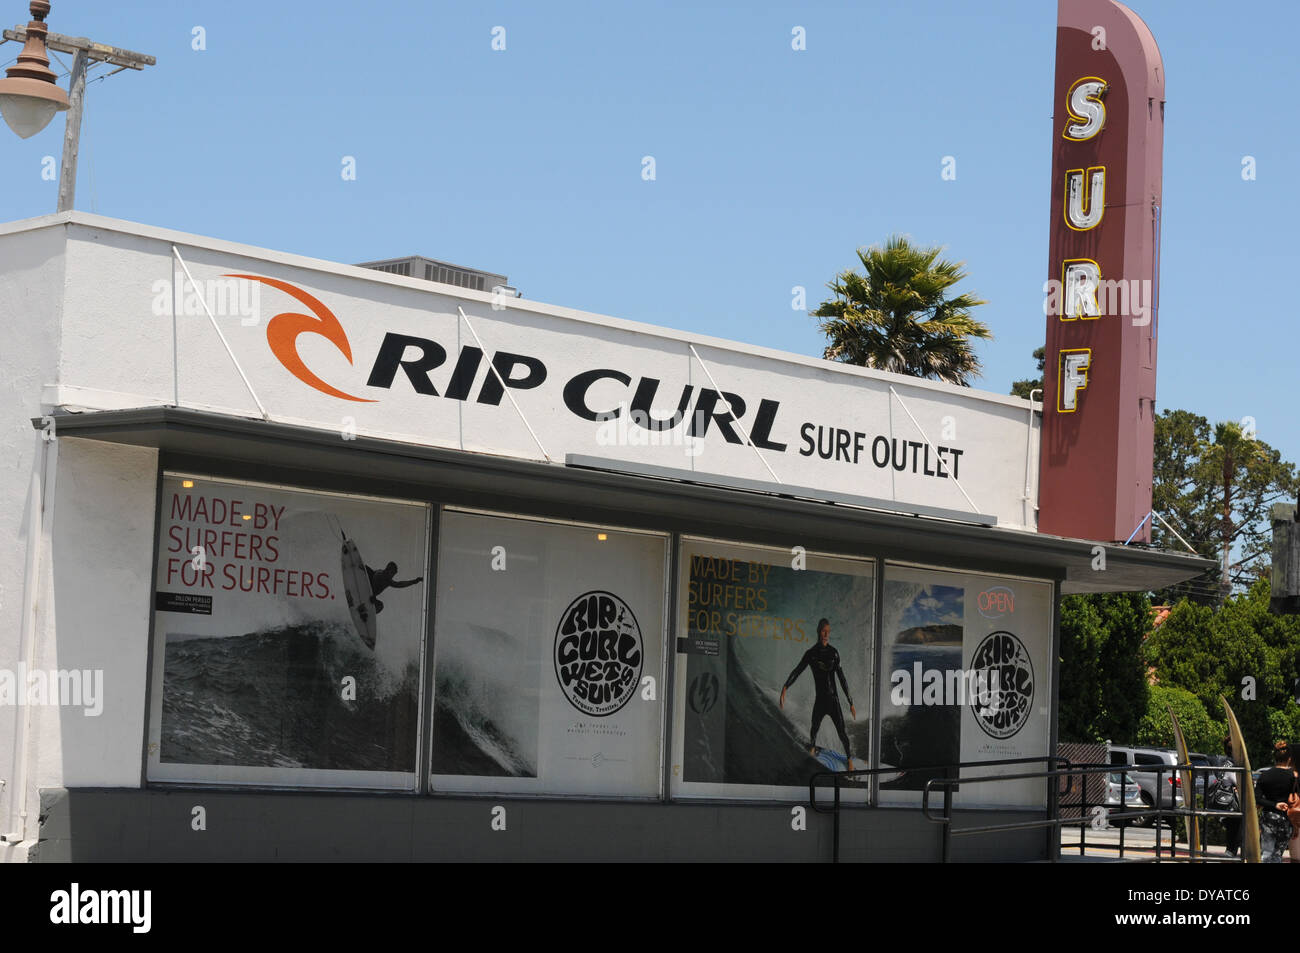 Rip Curl Banque d'image et photos - Alamy